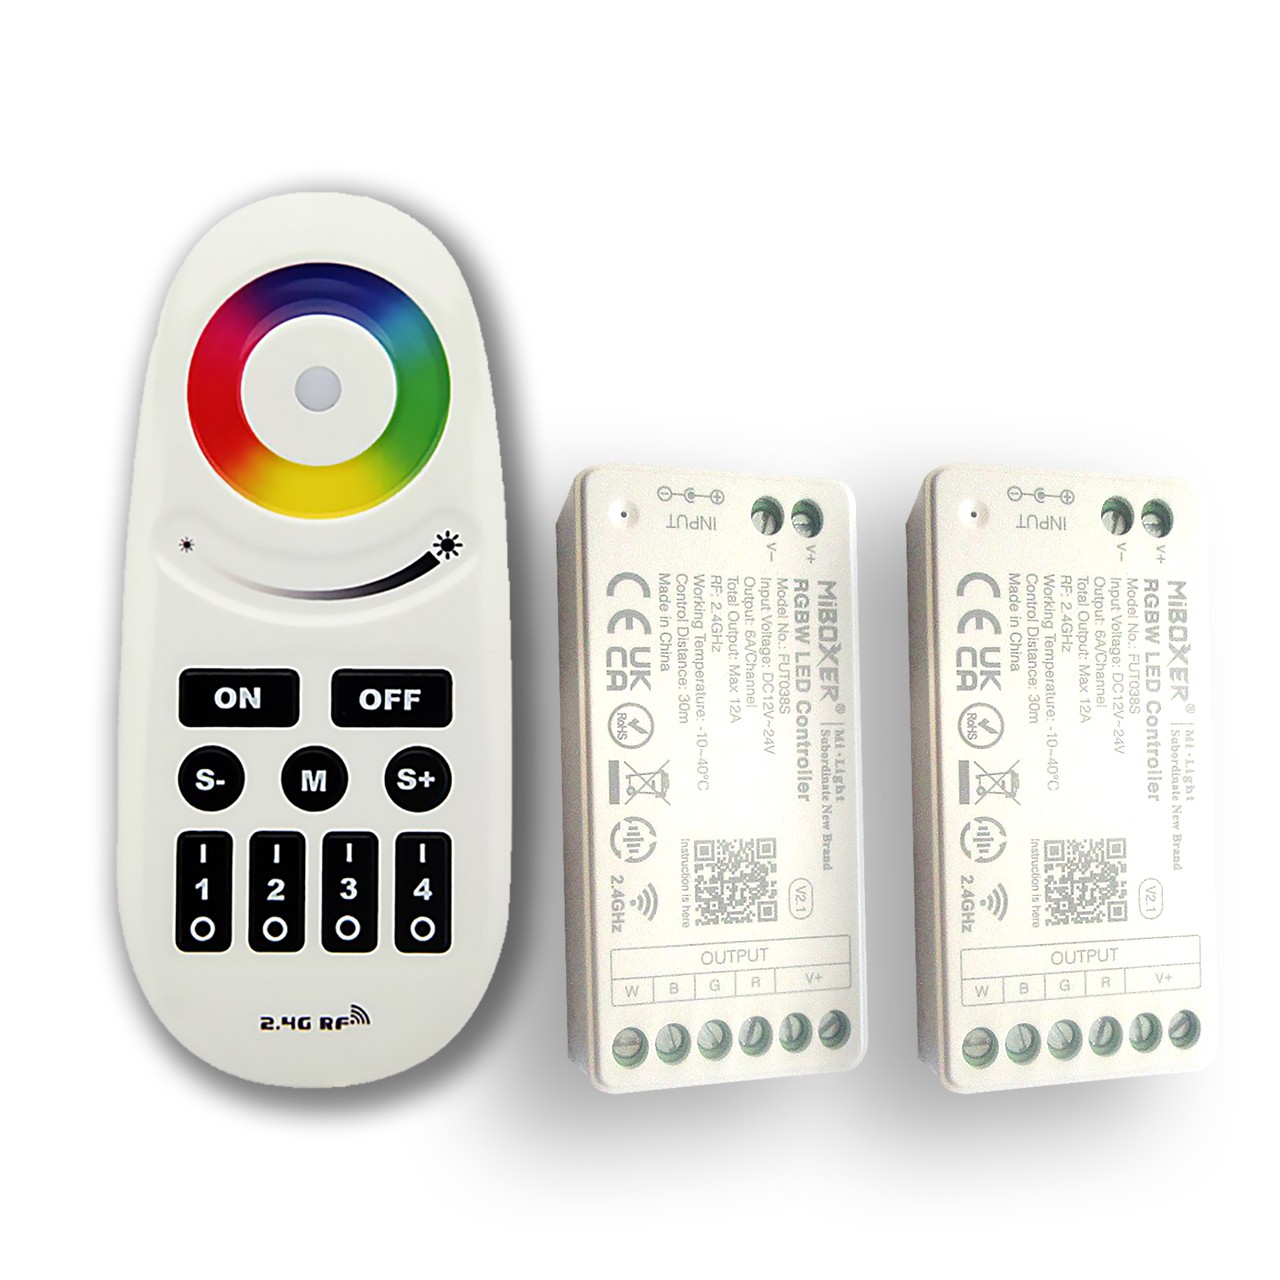 Controleur LED RGB tactile mural avec télécommande